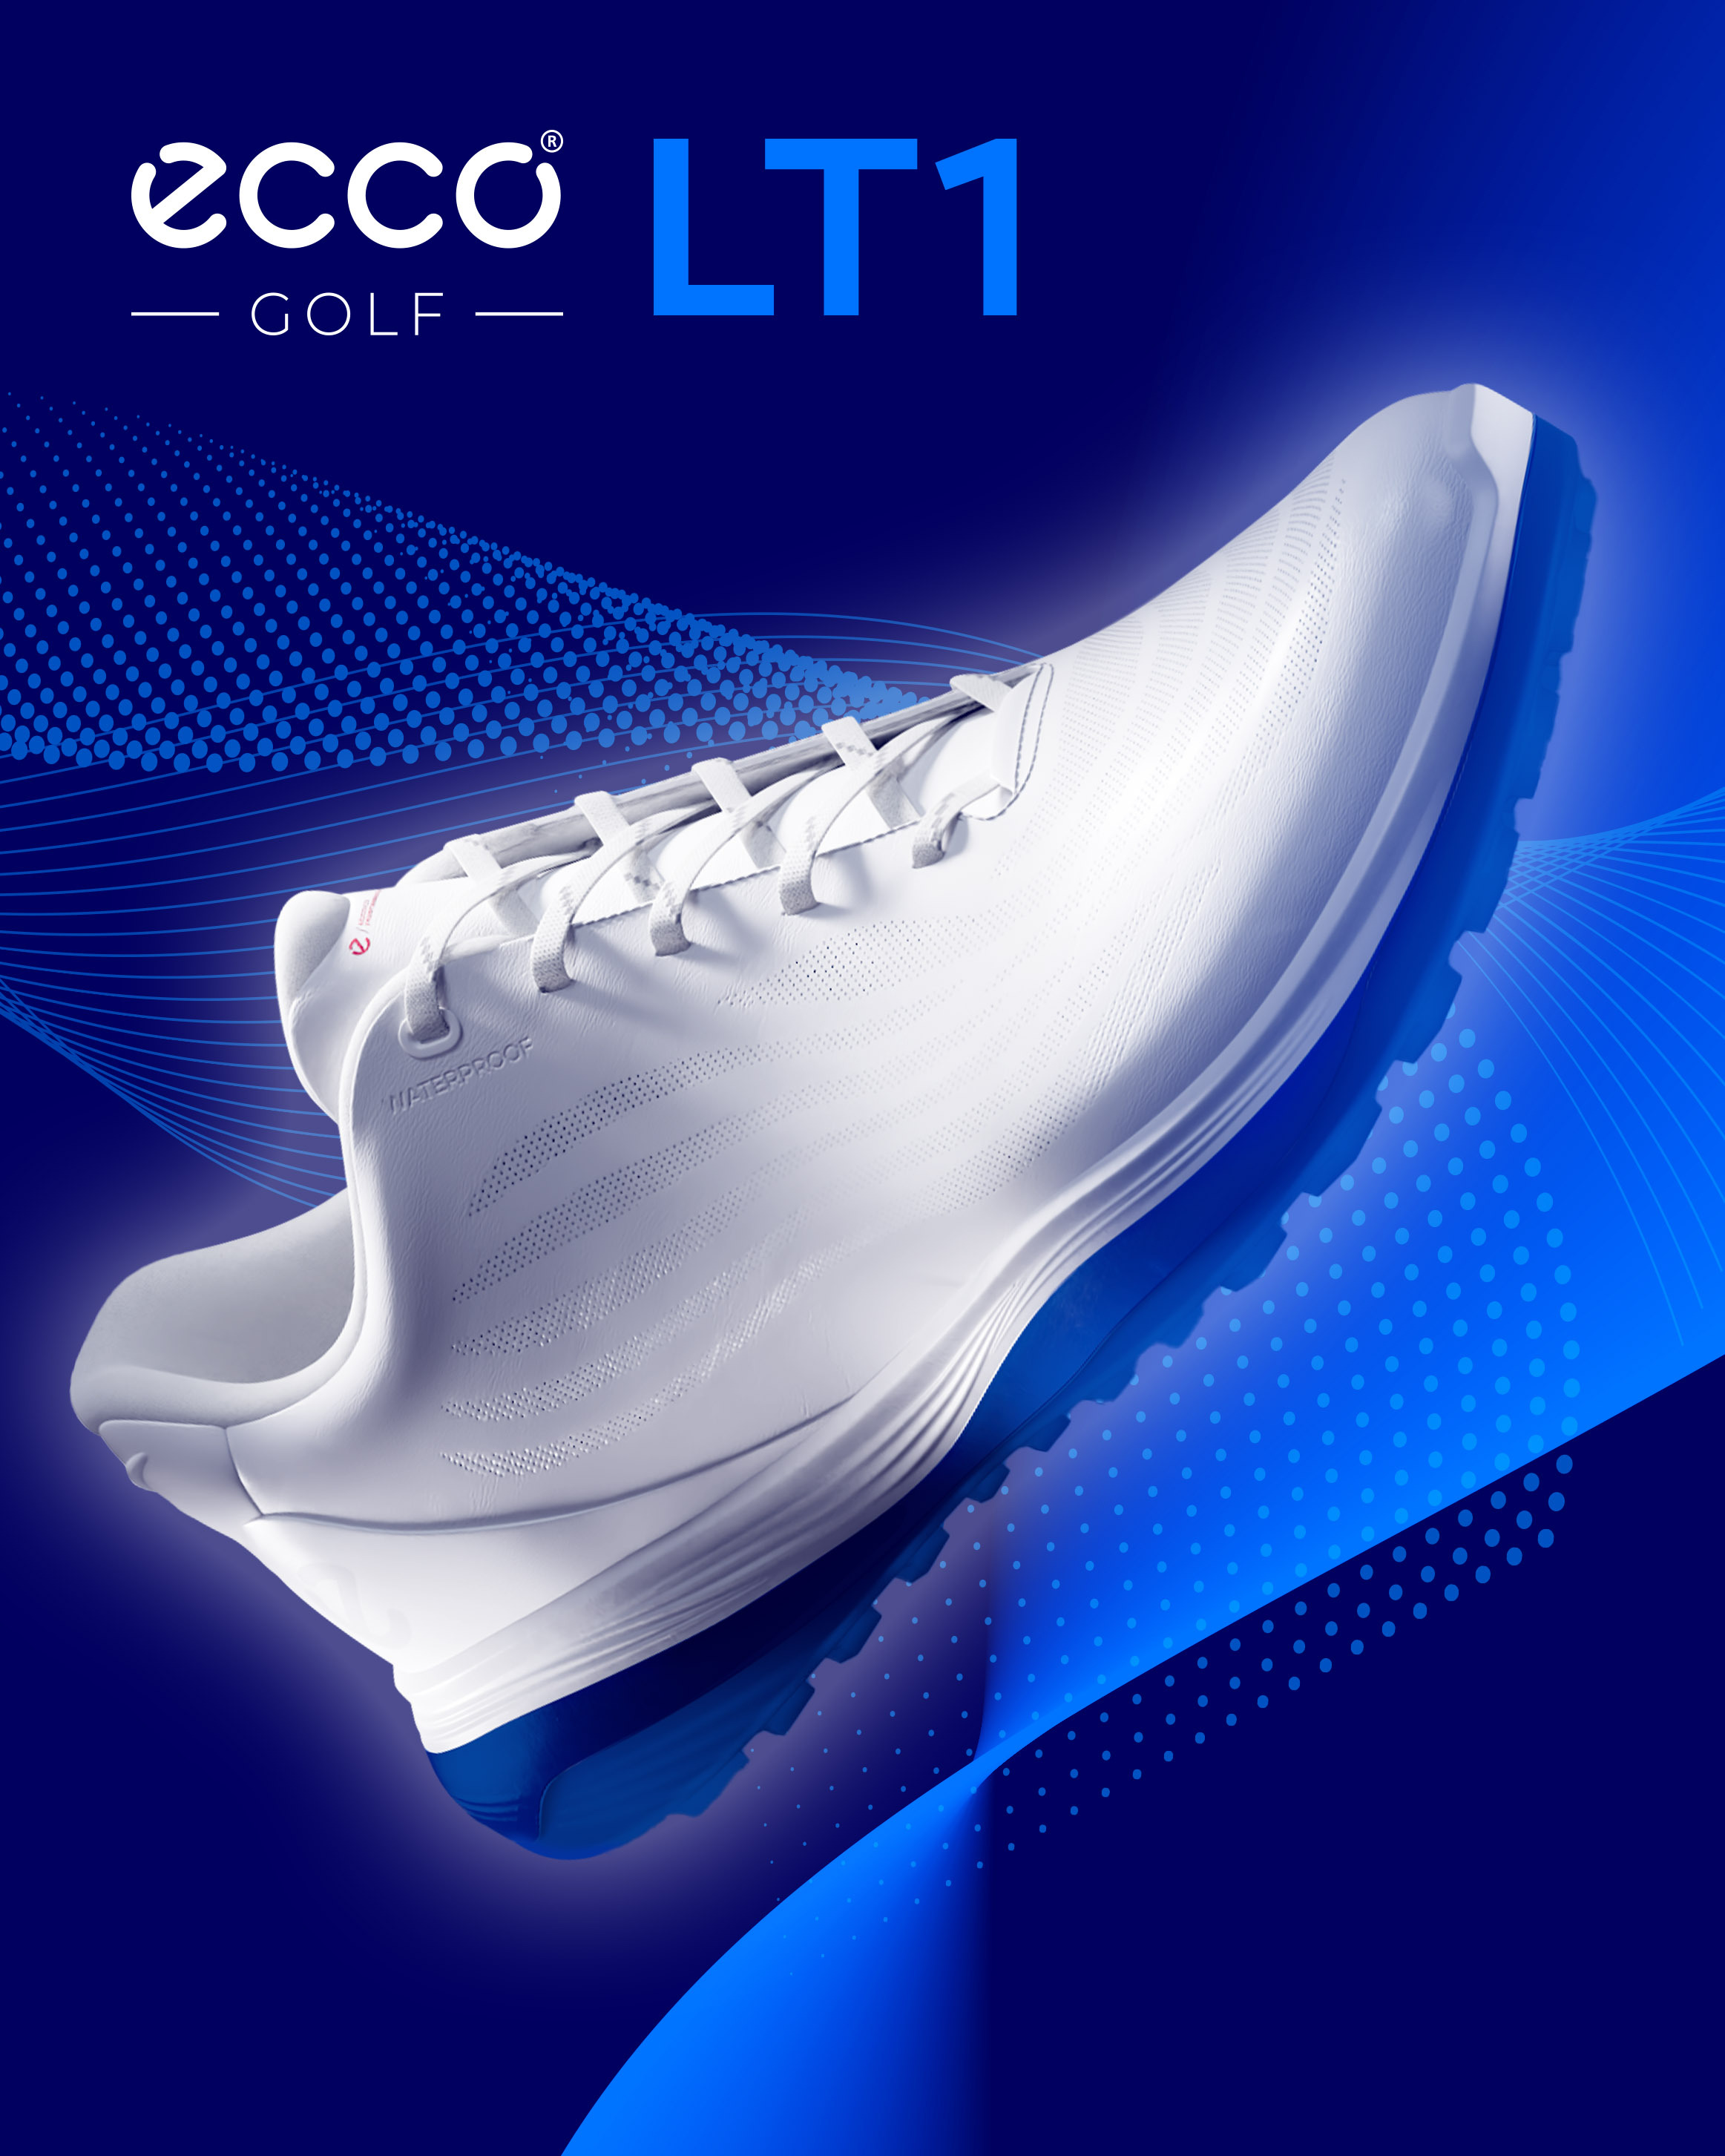 歩行性・パフォーマンス性を最新技術でサポートする
ゴルフシューズ『ECCO GOLF LT1』2月22日(木)新発売